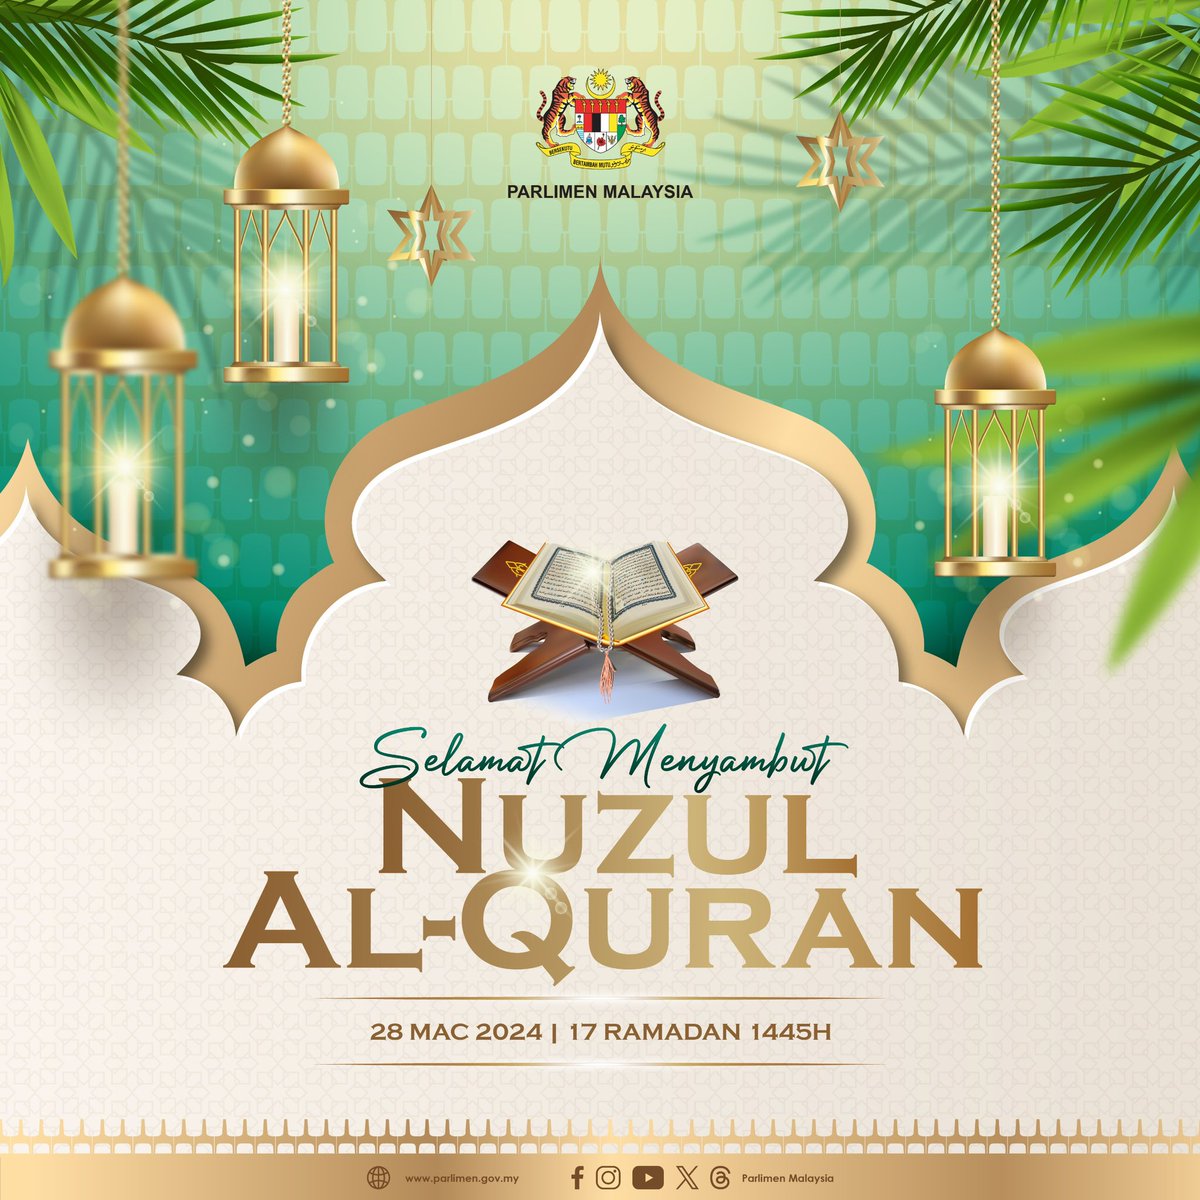 Salam Nuzul al-Quran 1445H / 2024M kepada seluruh umat islam. Sesungguhnya jadikanlah al-Quran dan sunnah sebagai petunjuk untuk mengukuhkan perpaduan tanpa mengira pegangan mazhab, aliran keagamaan dan pegangan politik. Ikhlas daripada Parlimen Malaysia